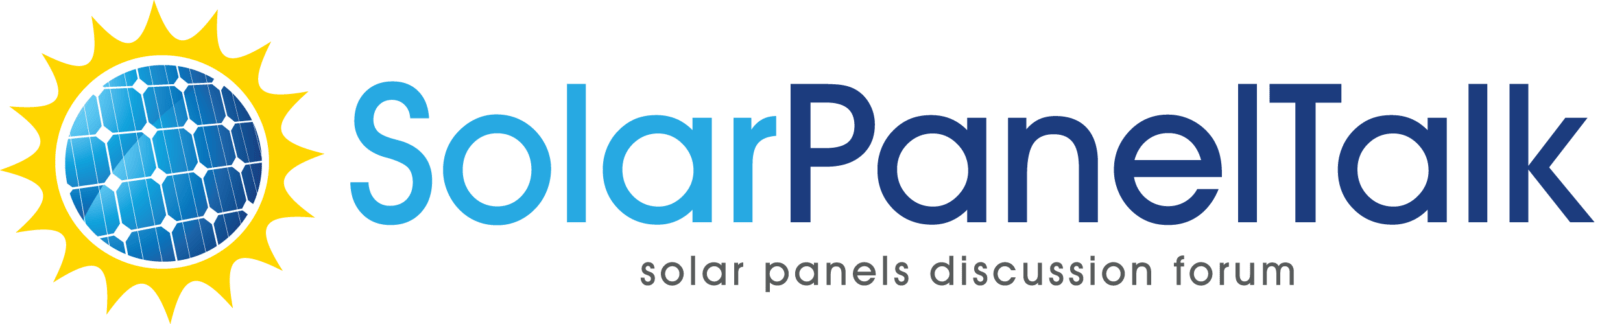 SolarPanelTalk_logo.png